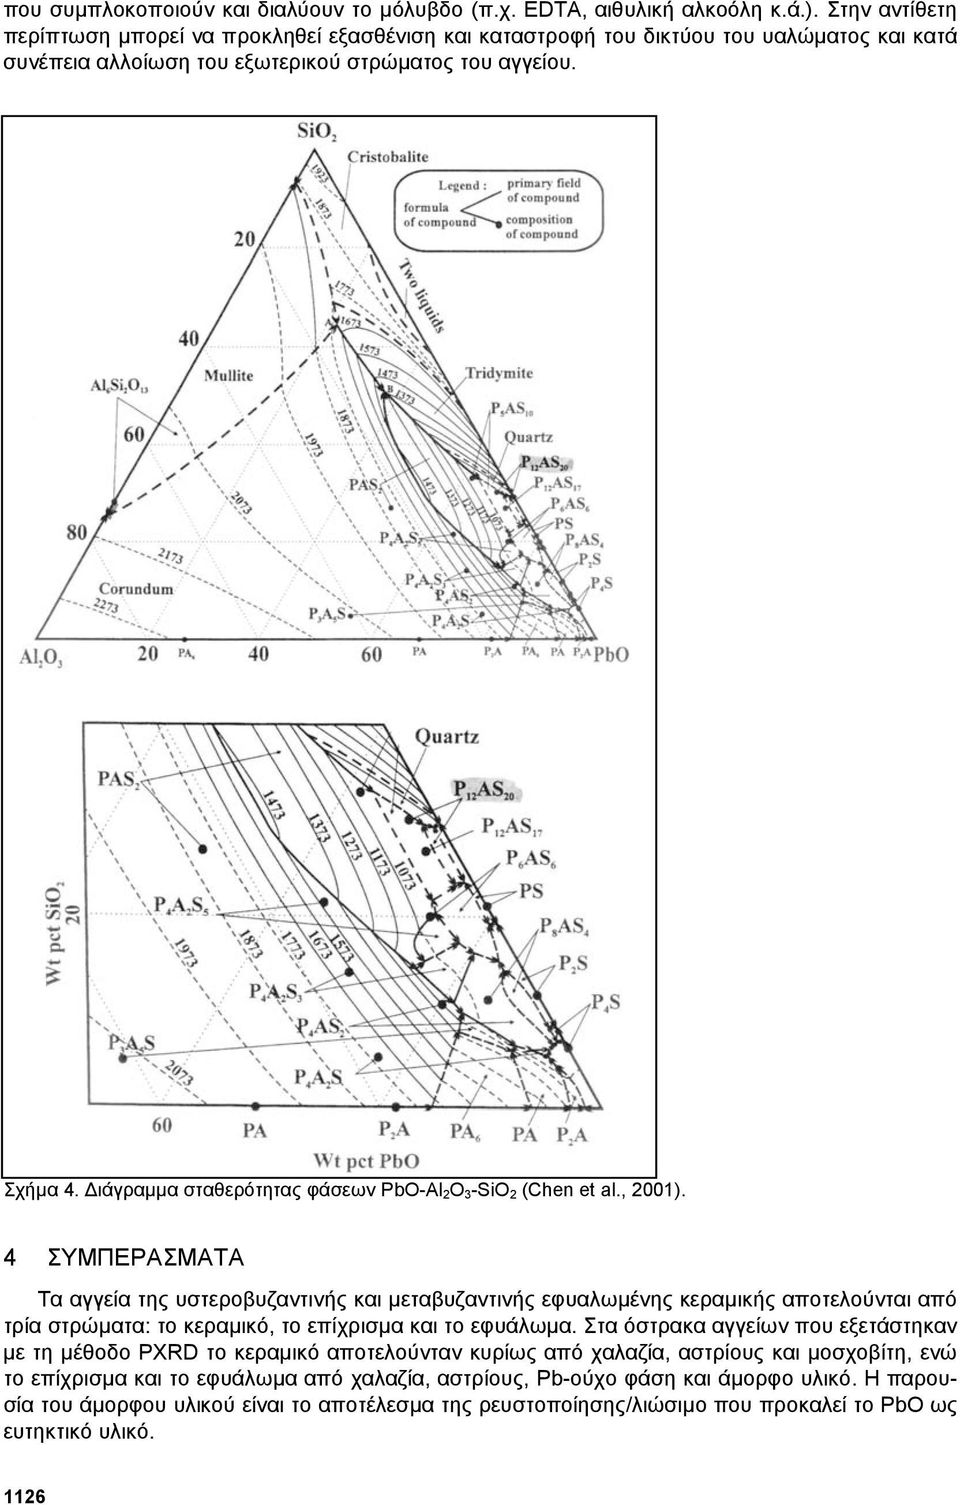 ιάγραµµα σταθερότητας φάσεων PbO-Al 2O 3-SiO 2 (Chen et al., 2001).